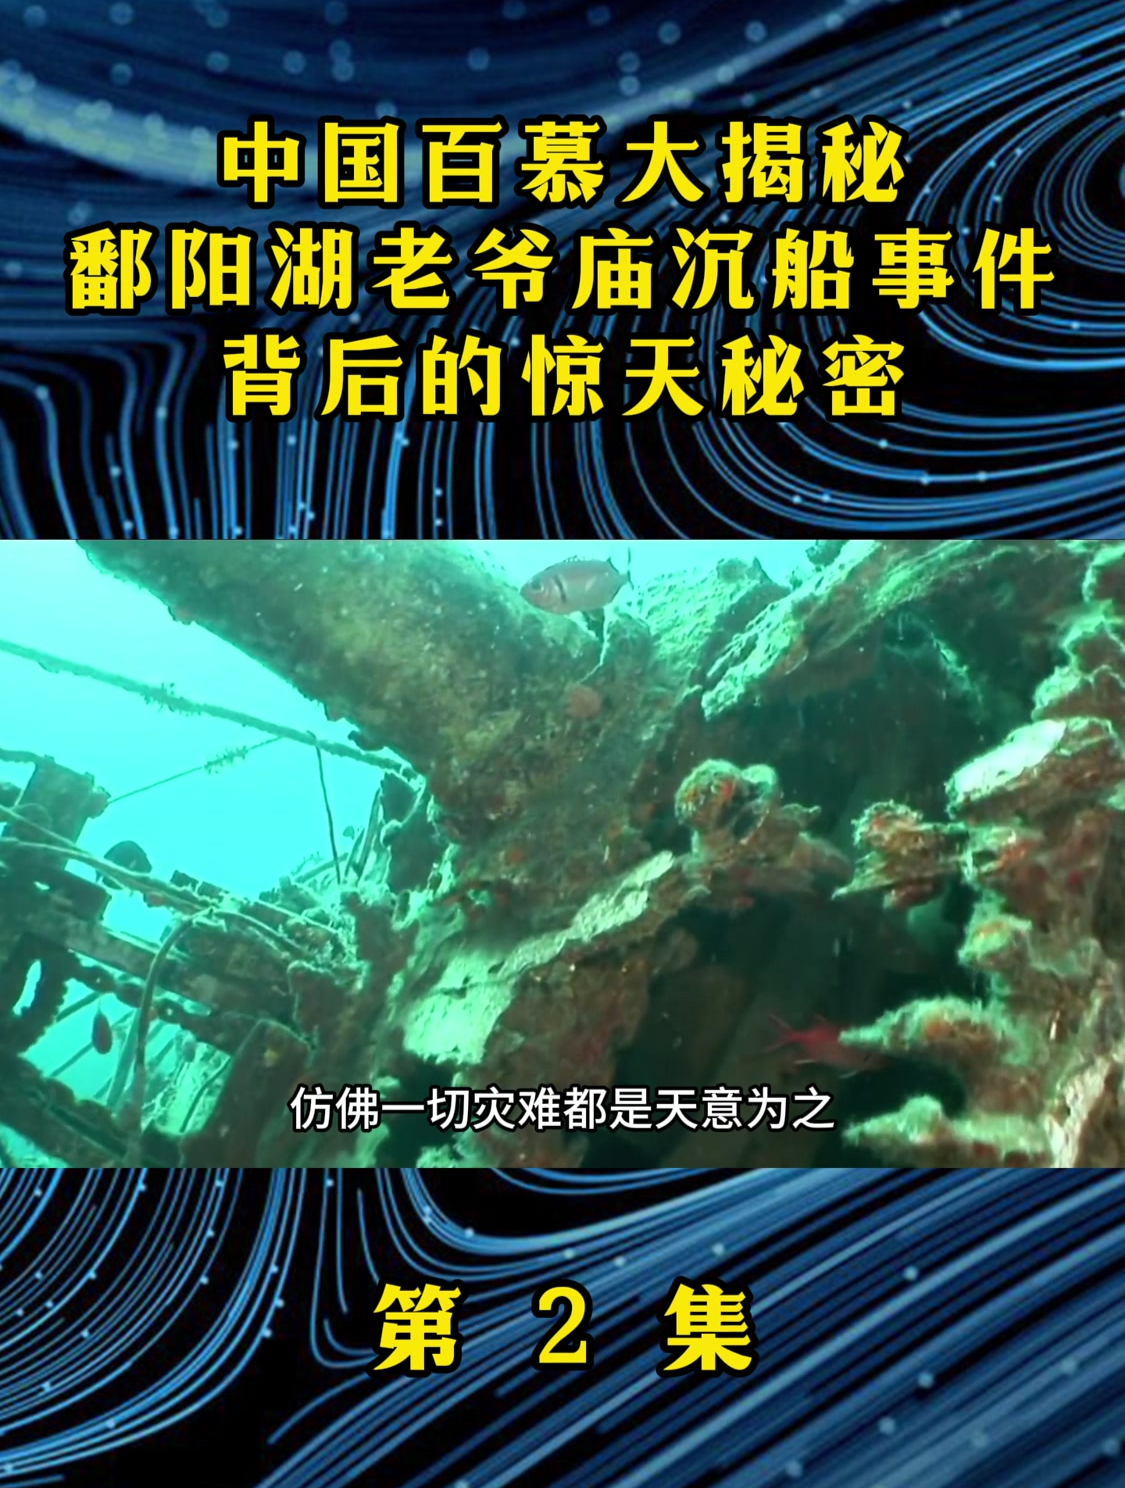 中国百慕大揭秘鄱阳湖老爷庙沉船事件背后的惊天秘密